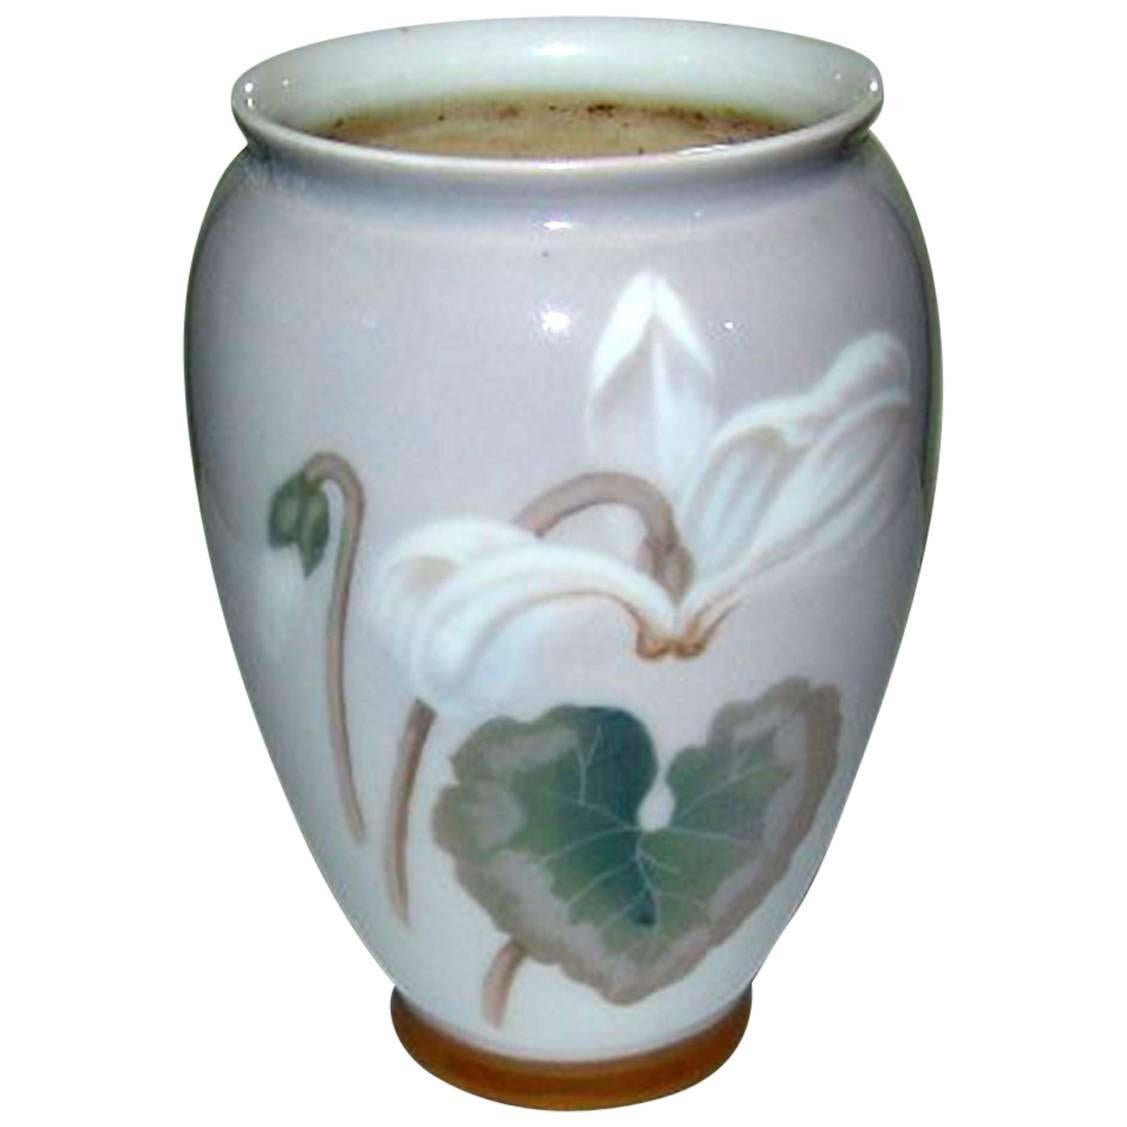 Bing & Grondahl Art Nouveau Vase #8614/365 For Sale